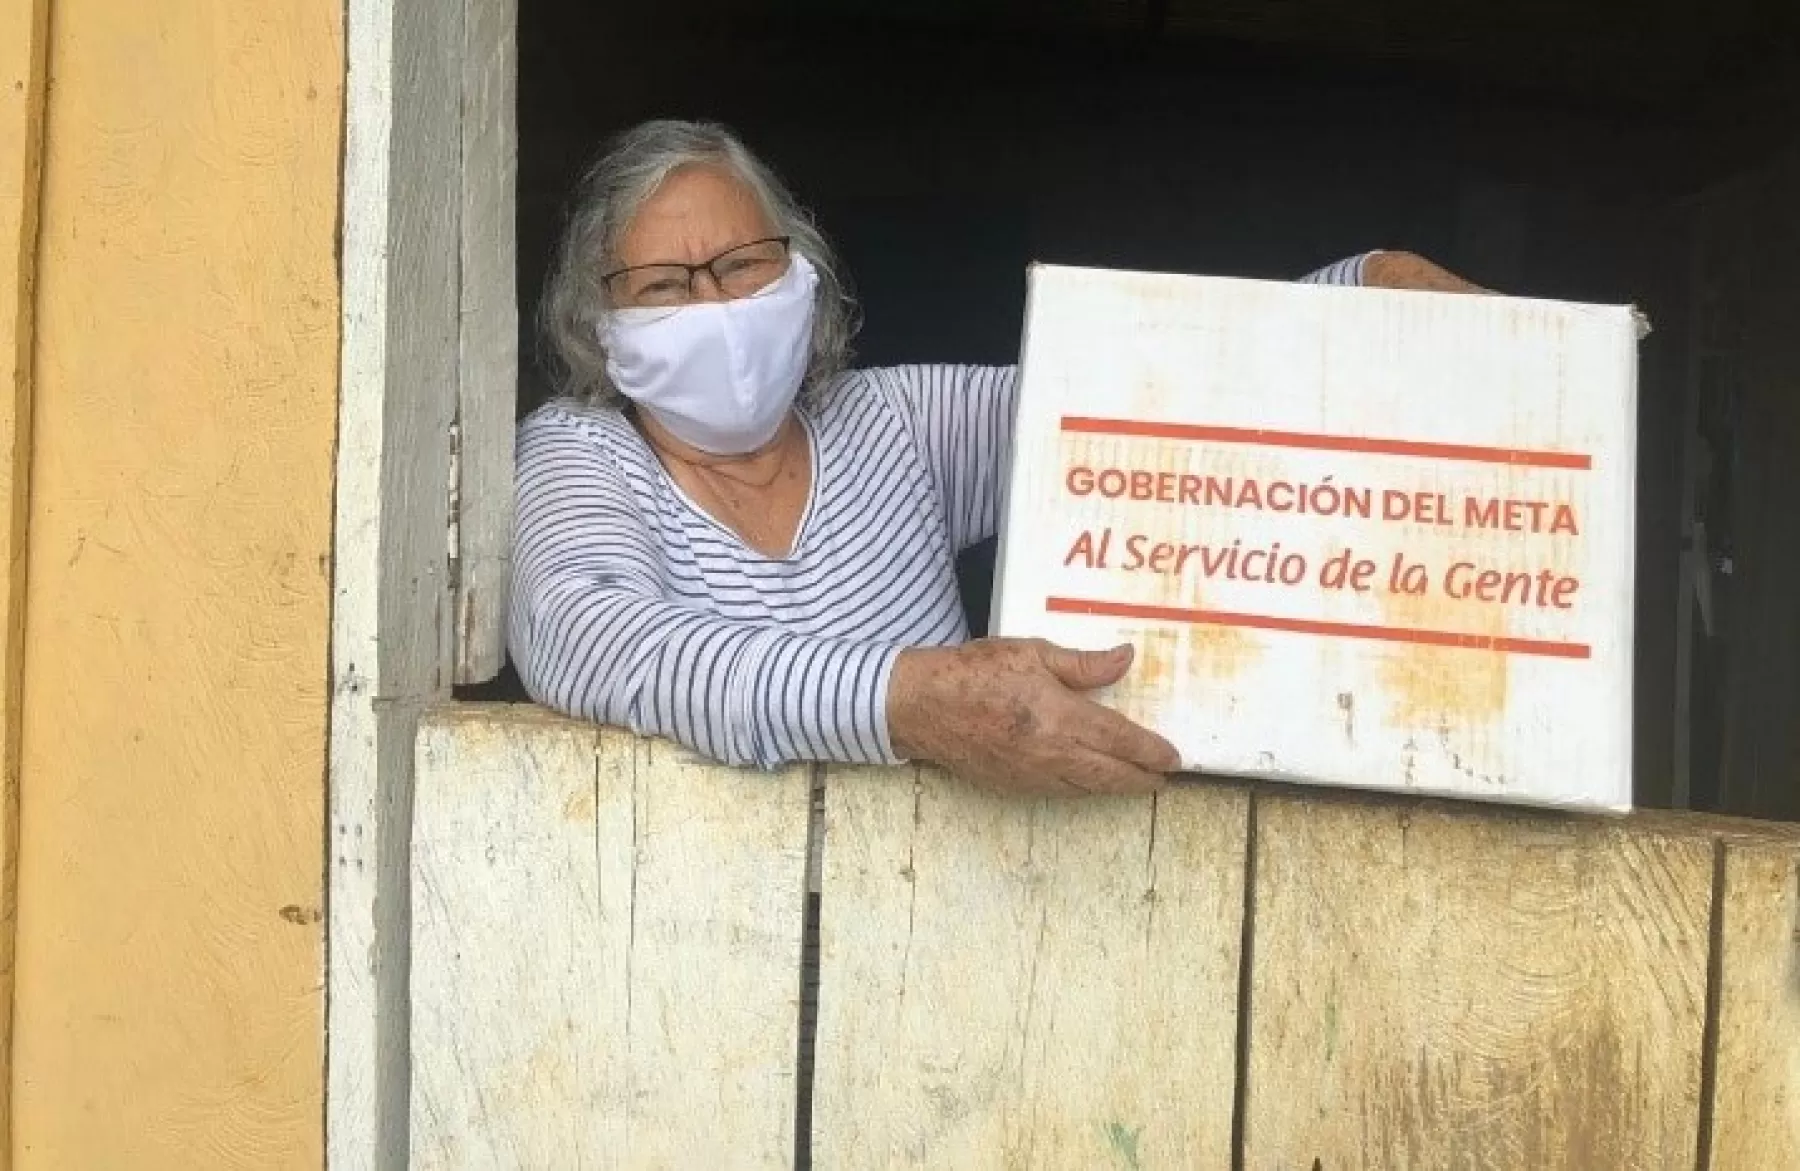 Más de 11 mil personas en Villavicencio han recibido ayudas humanitarias de la gobernación del Meta.